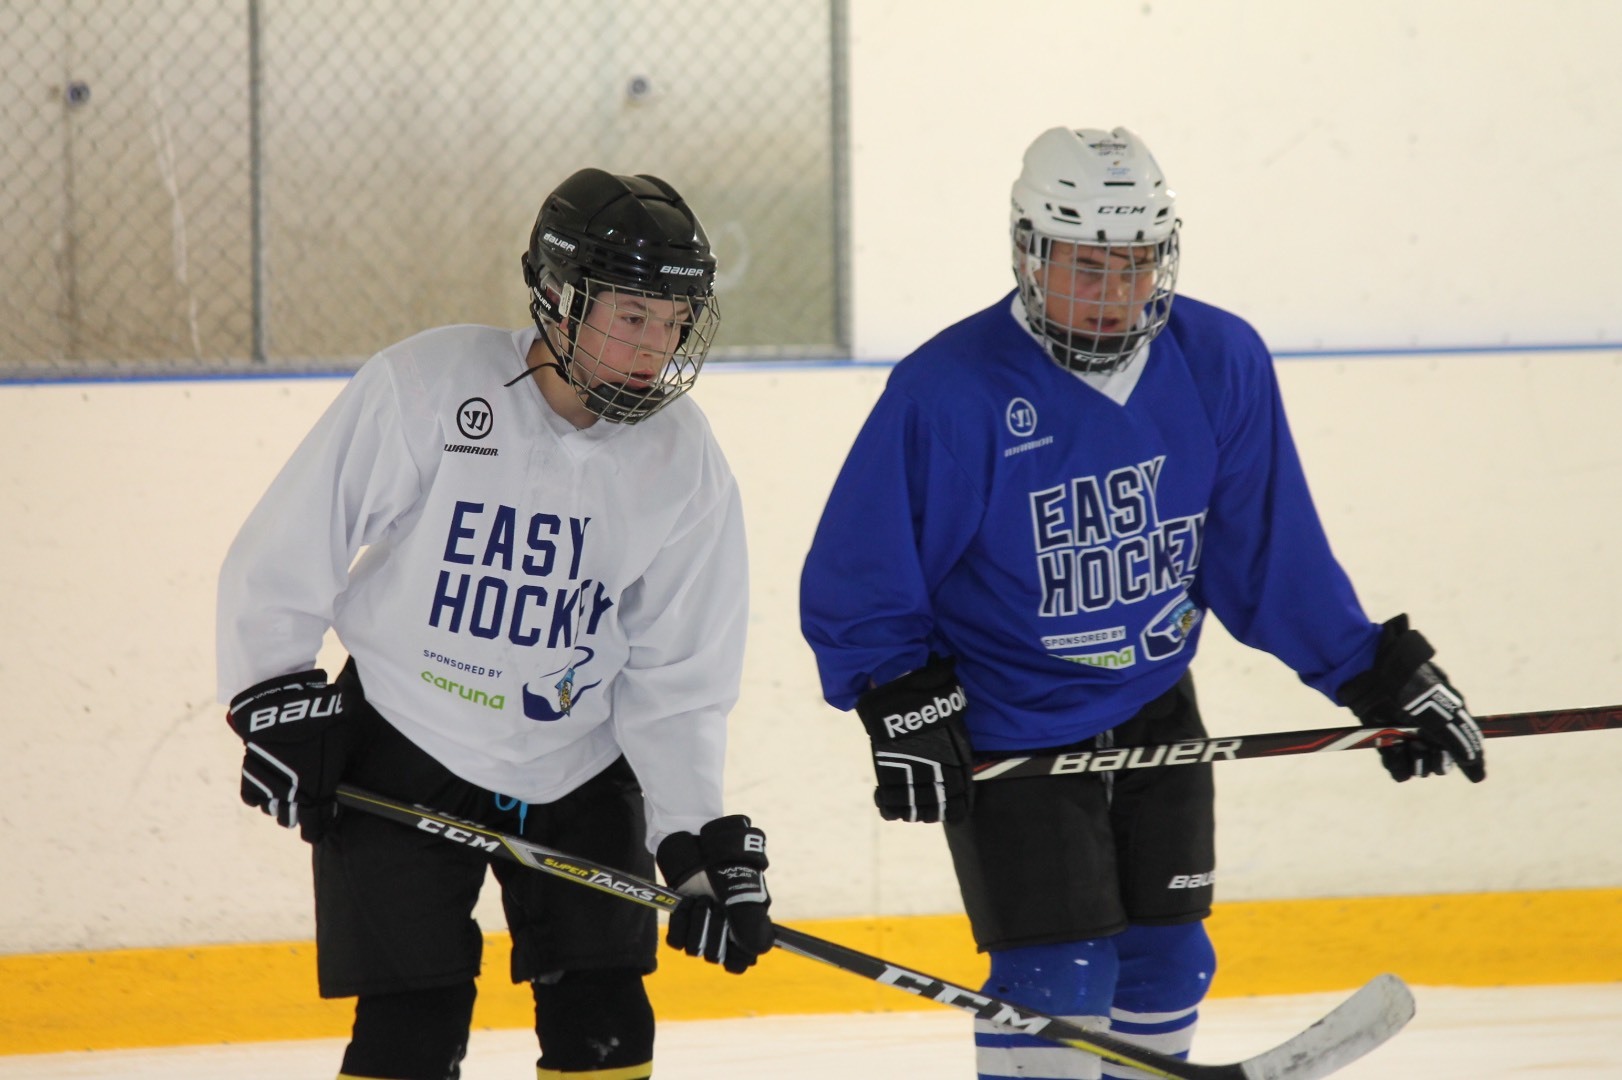 EasyHockey ryhmät harjoittelevat yhdessä